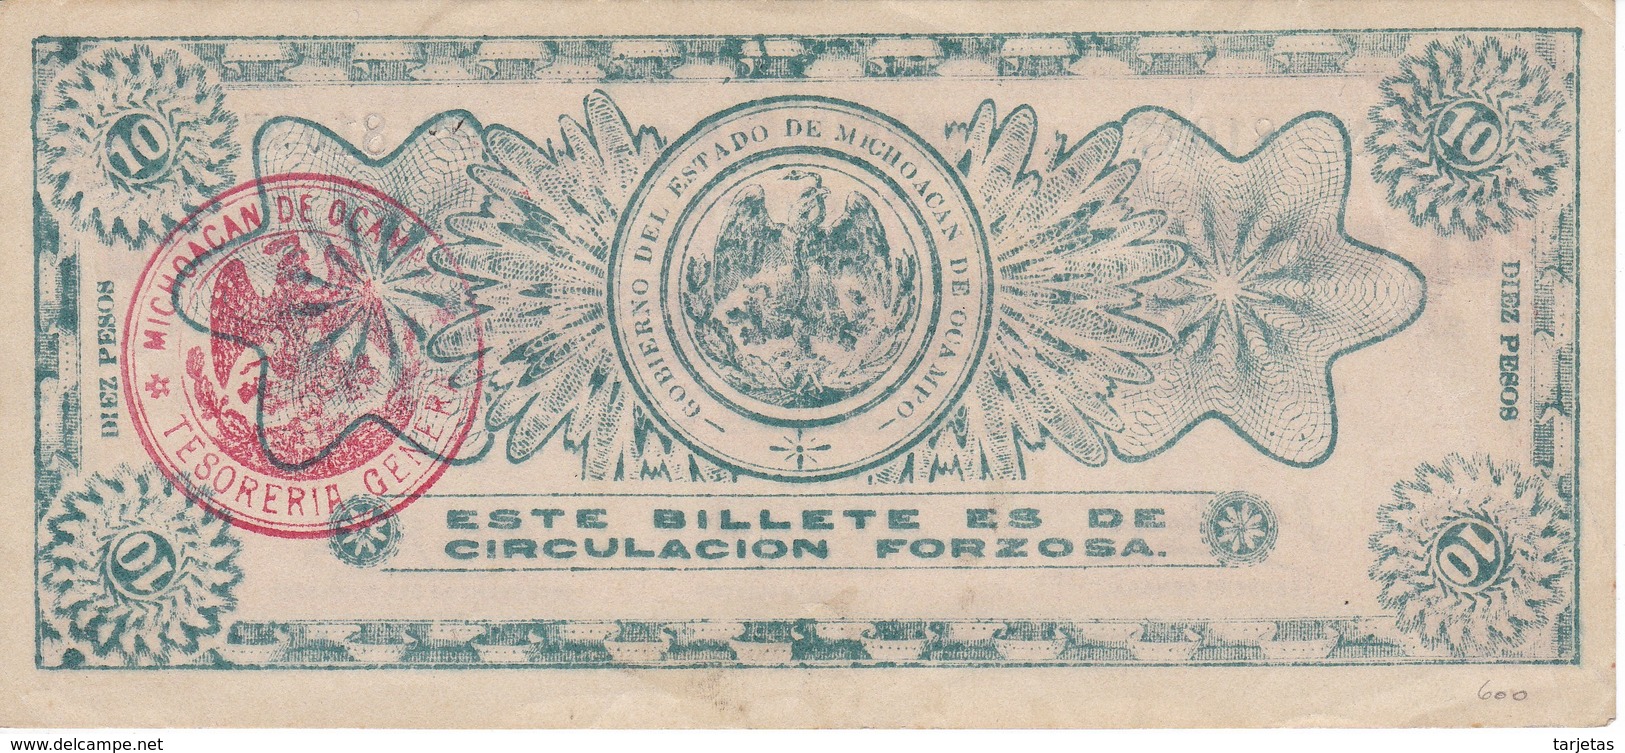 BILLETE DE MEXICO DE 10 PESOS DEL AÑO 1915 ESTADO DE MICHOACAN DE OCAMPO  (BANKNOTE)  RARO - México